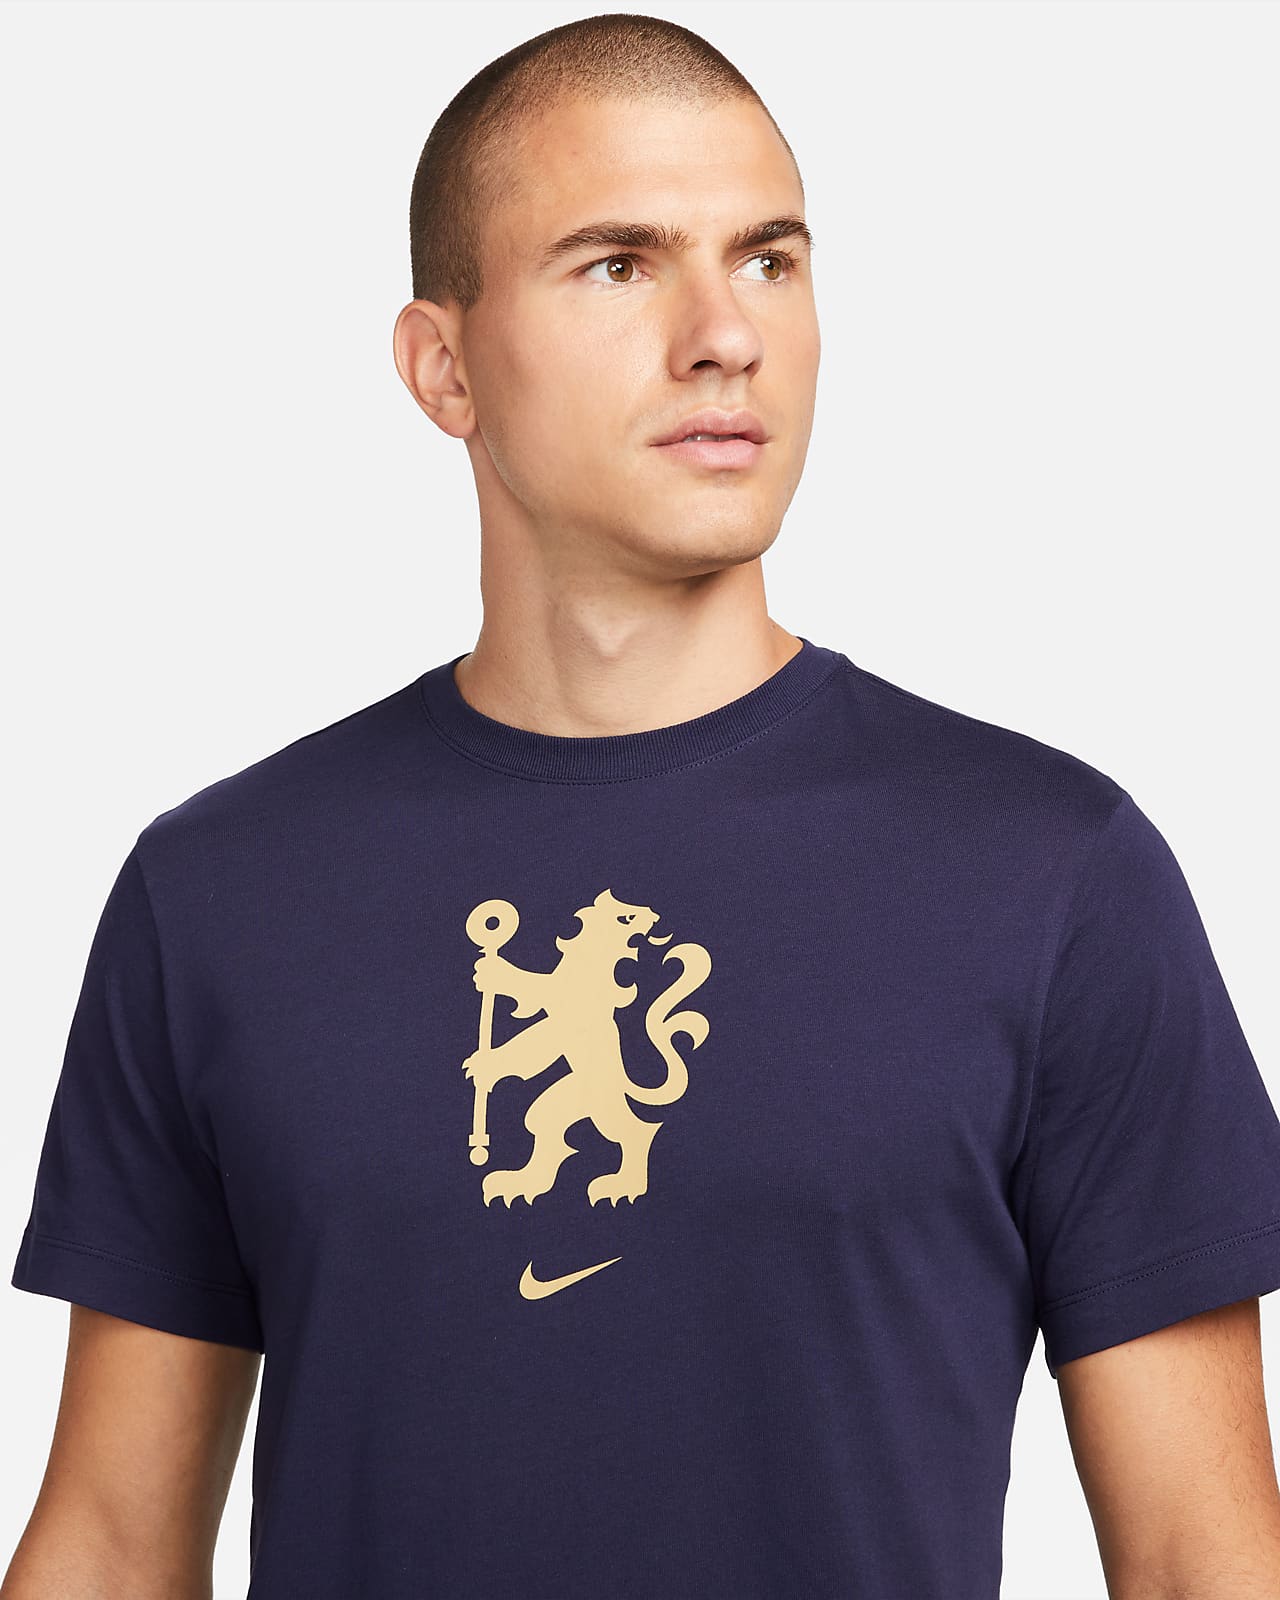 chelsea air max jersey | Chelsea FC Men's T-Shirt. Nike LU